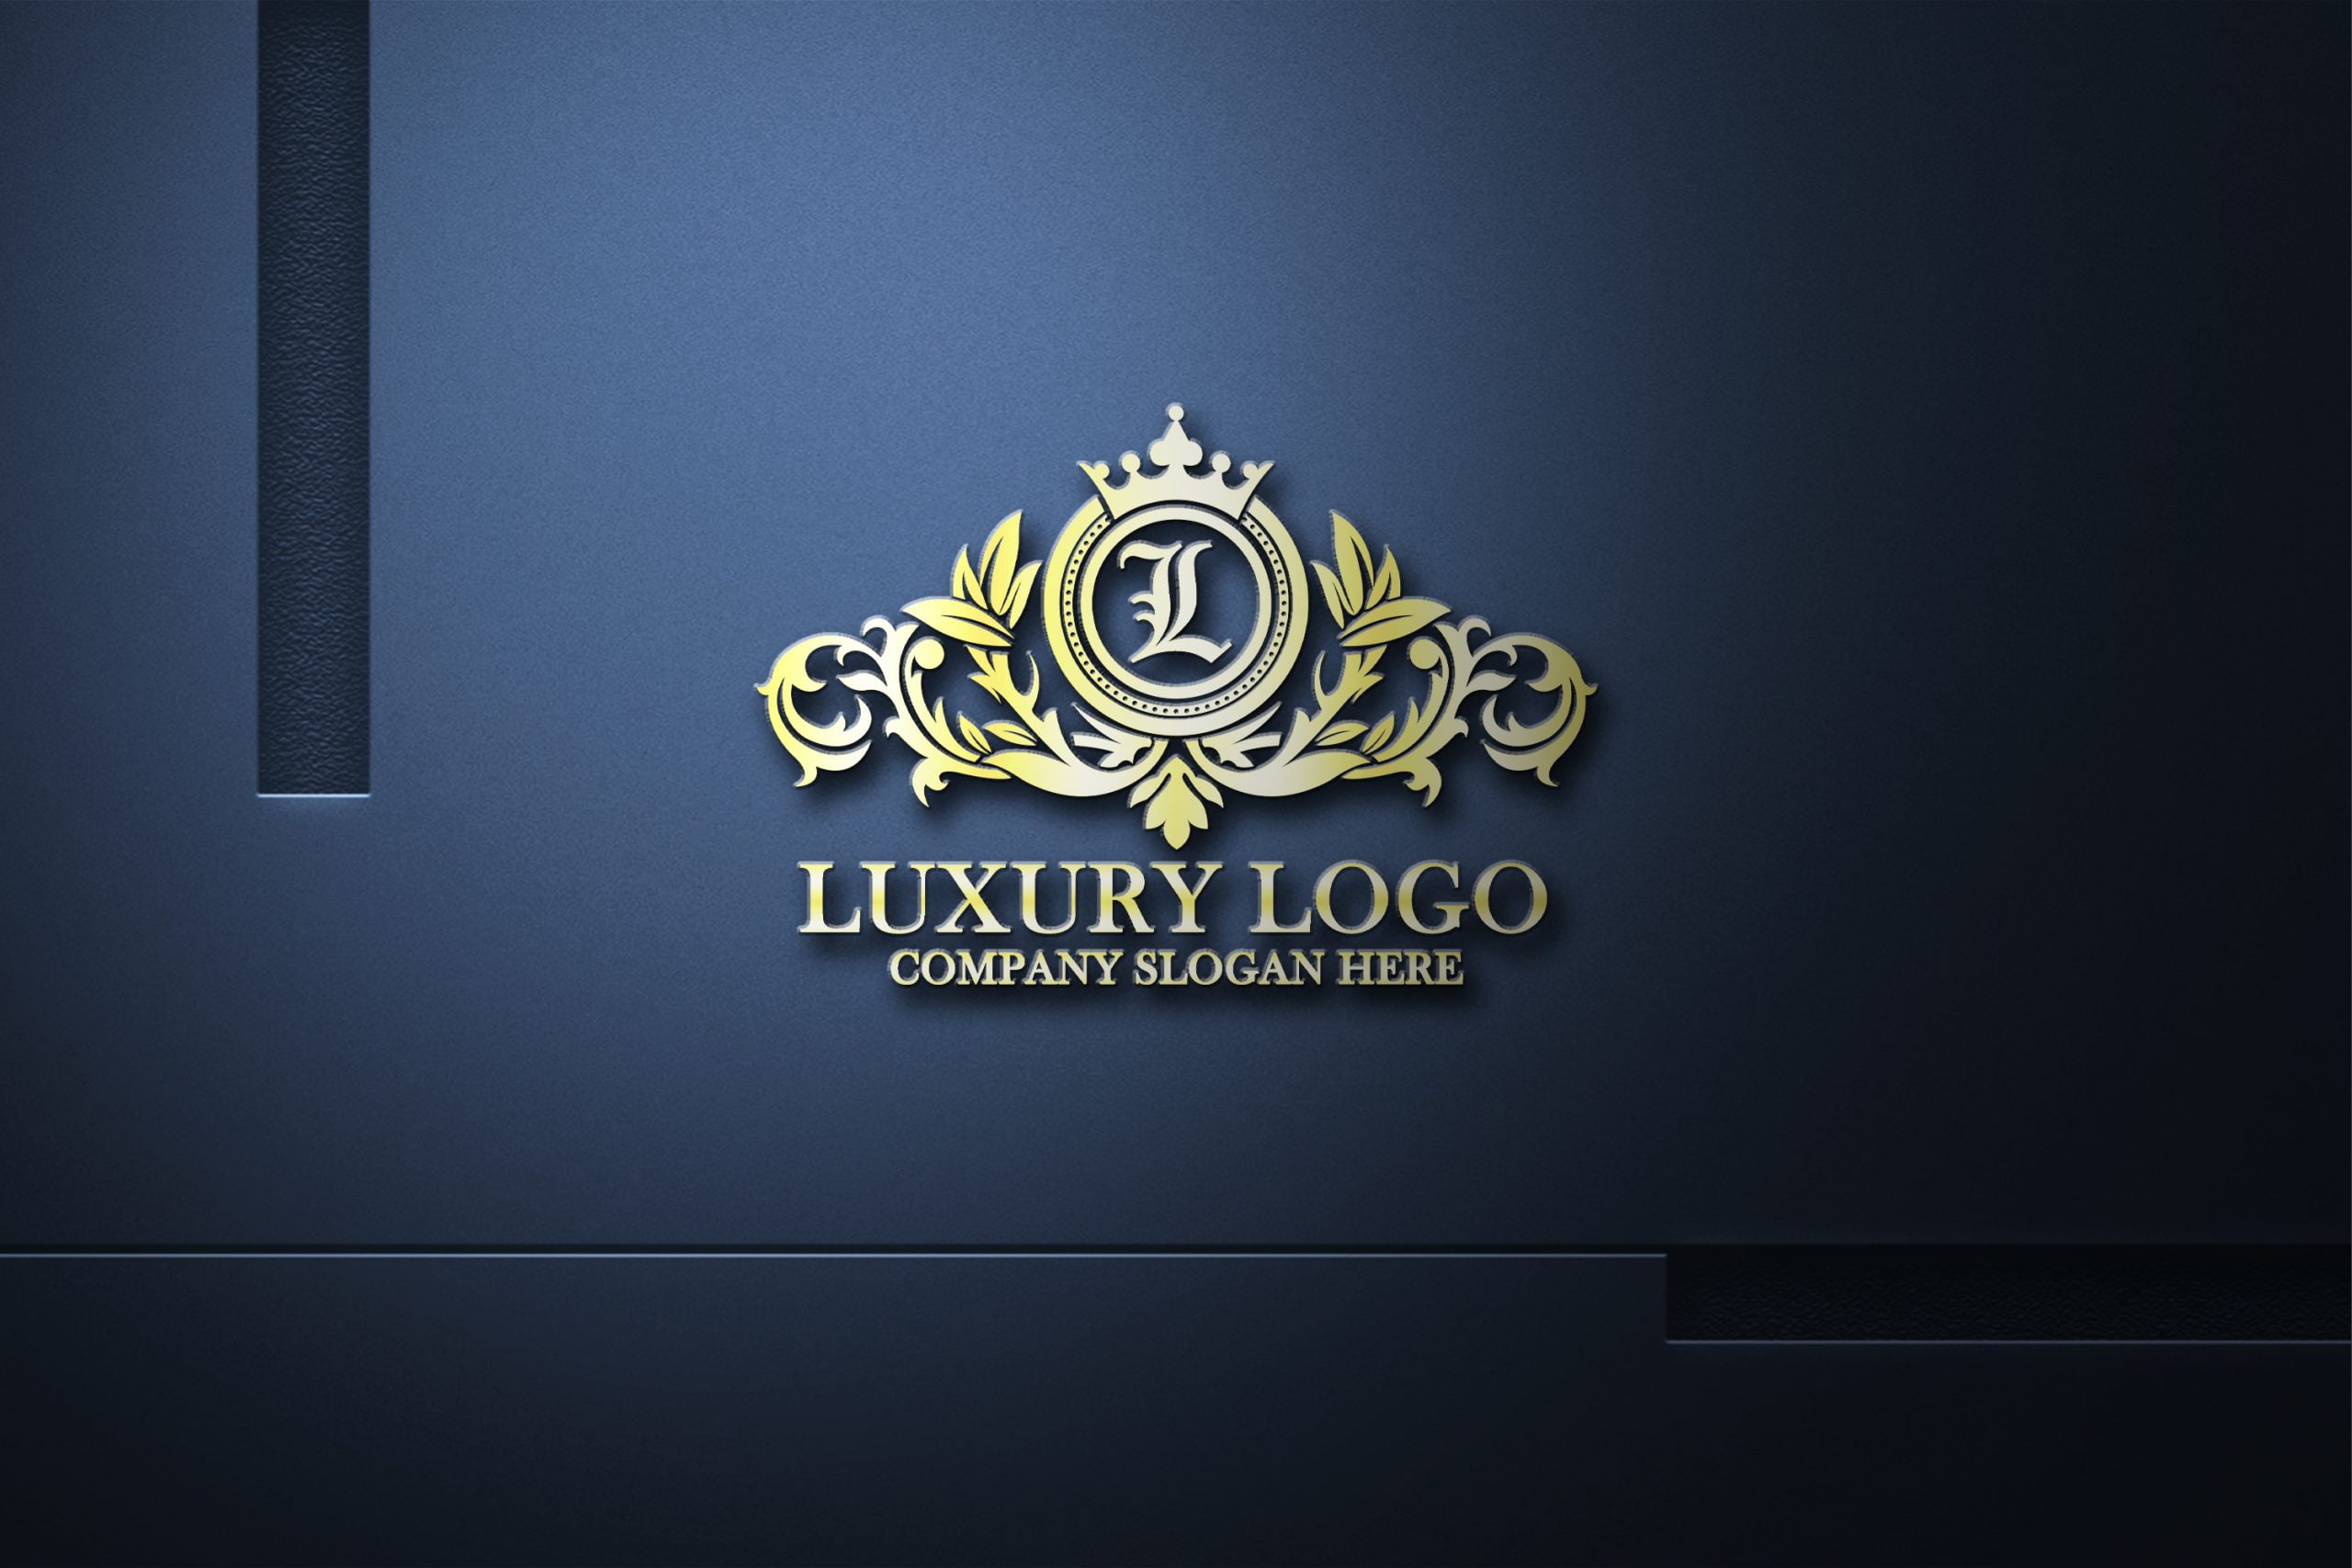 Professional Luxury Logo Design on a dark wall